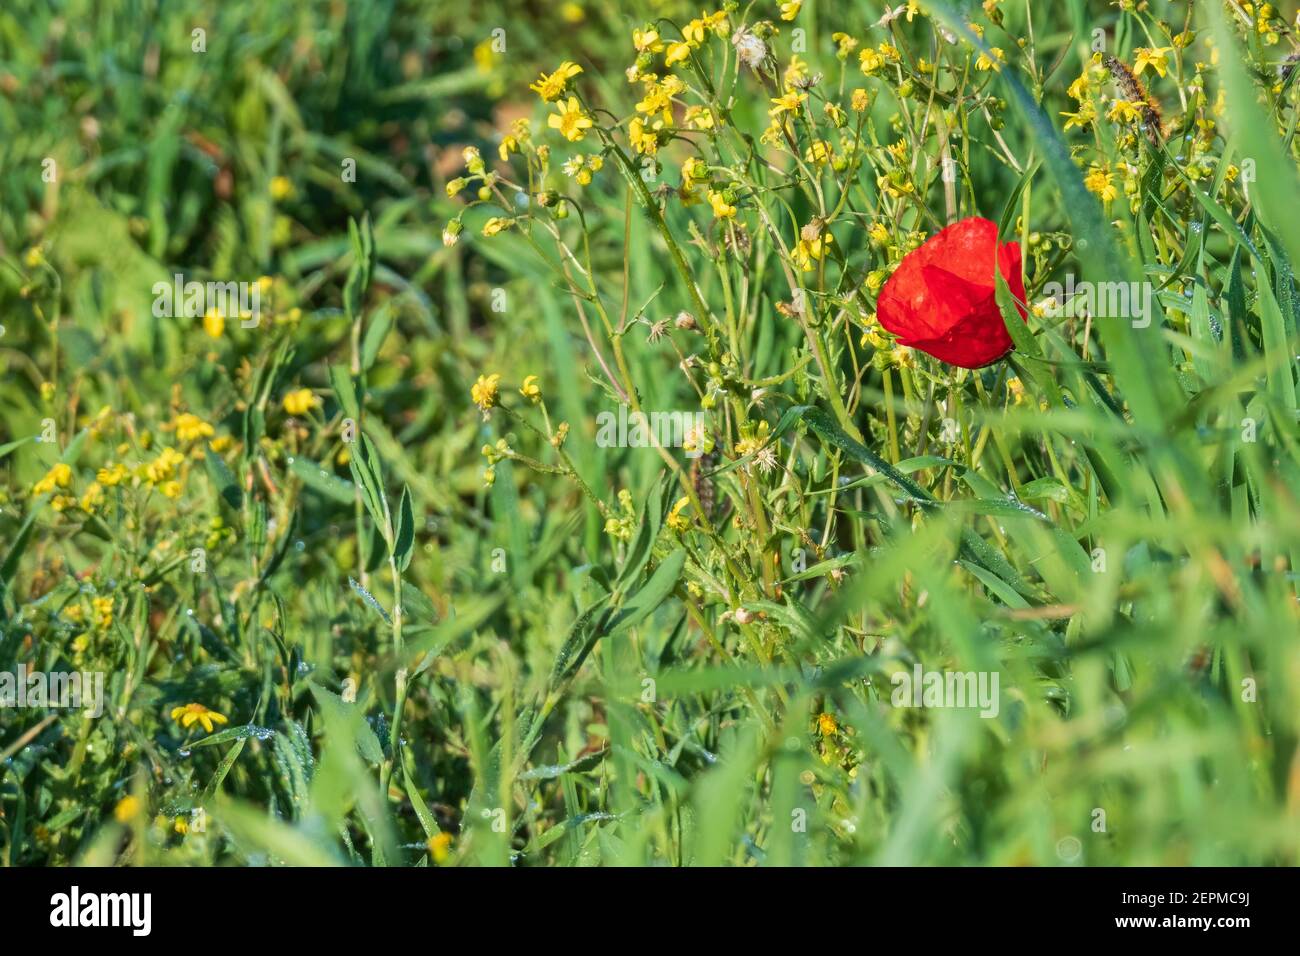 Flor de amapola roja de cerca sobre un fondo de amarillo flores y hierba verde Foto de stock